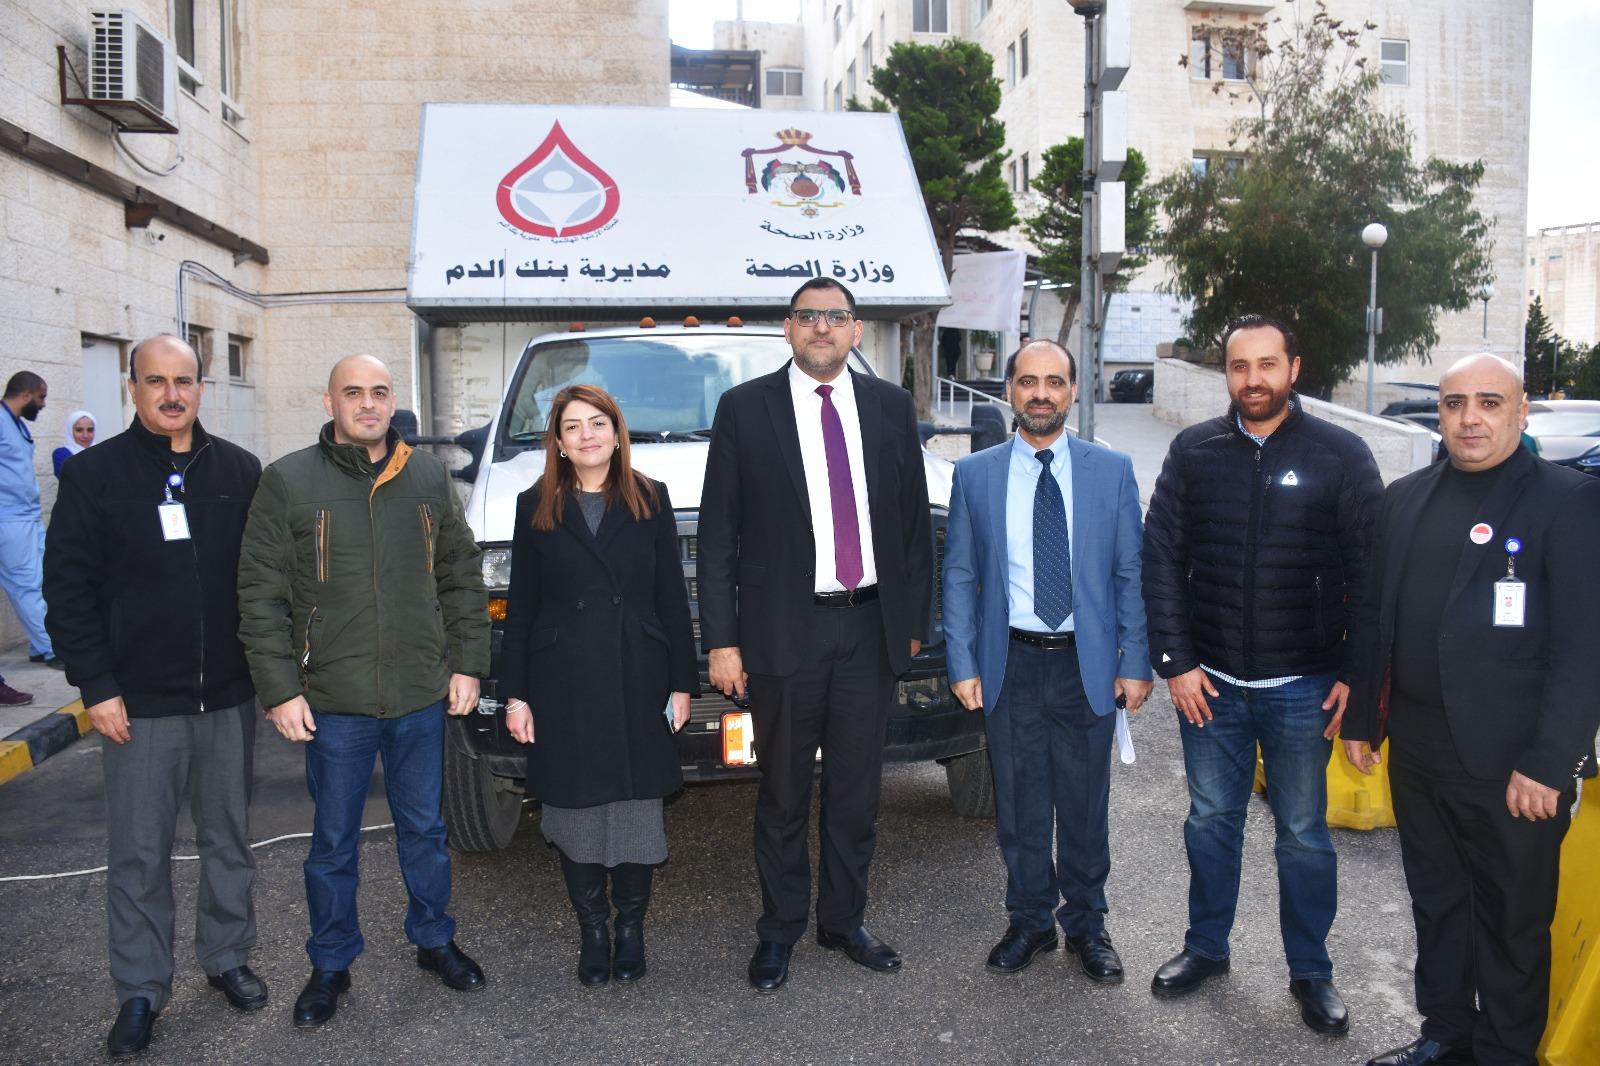 حملة التبرع بالدم لأهل غزة بالتعاون مع وزارة الصحة وبنك الدم الوطني